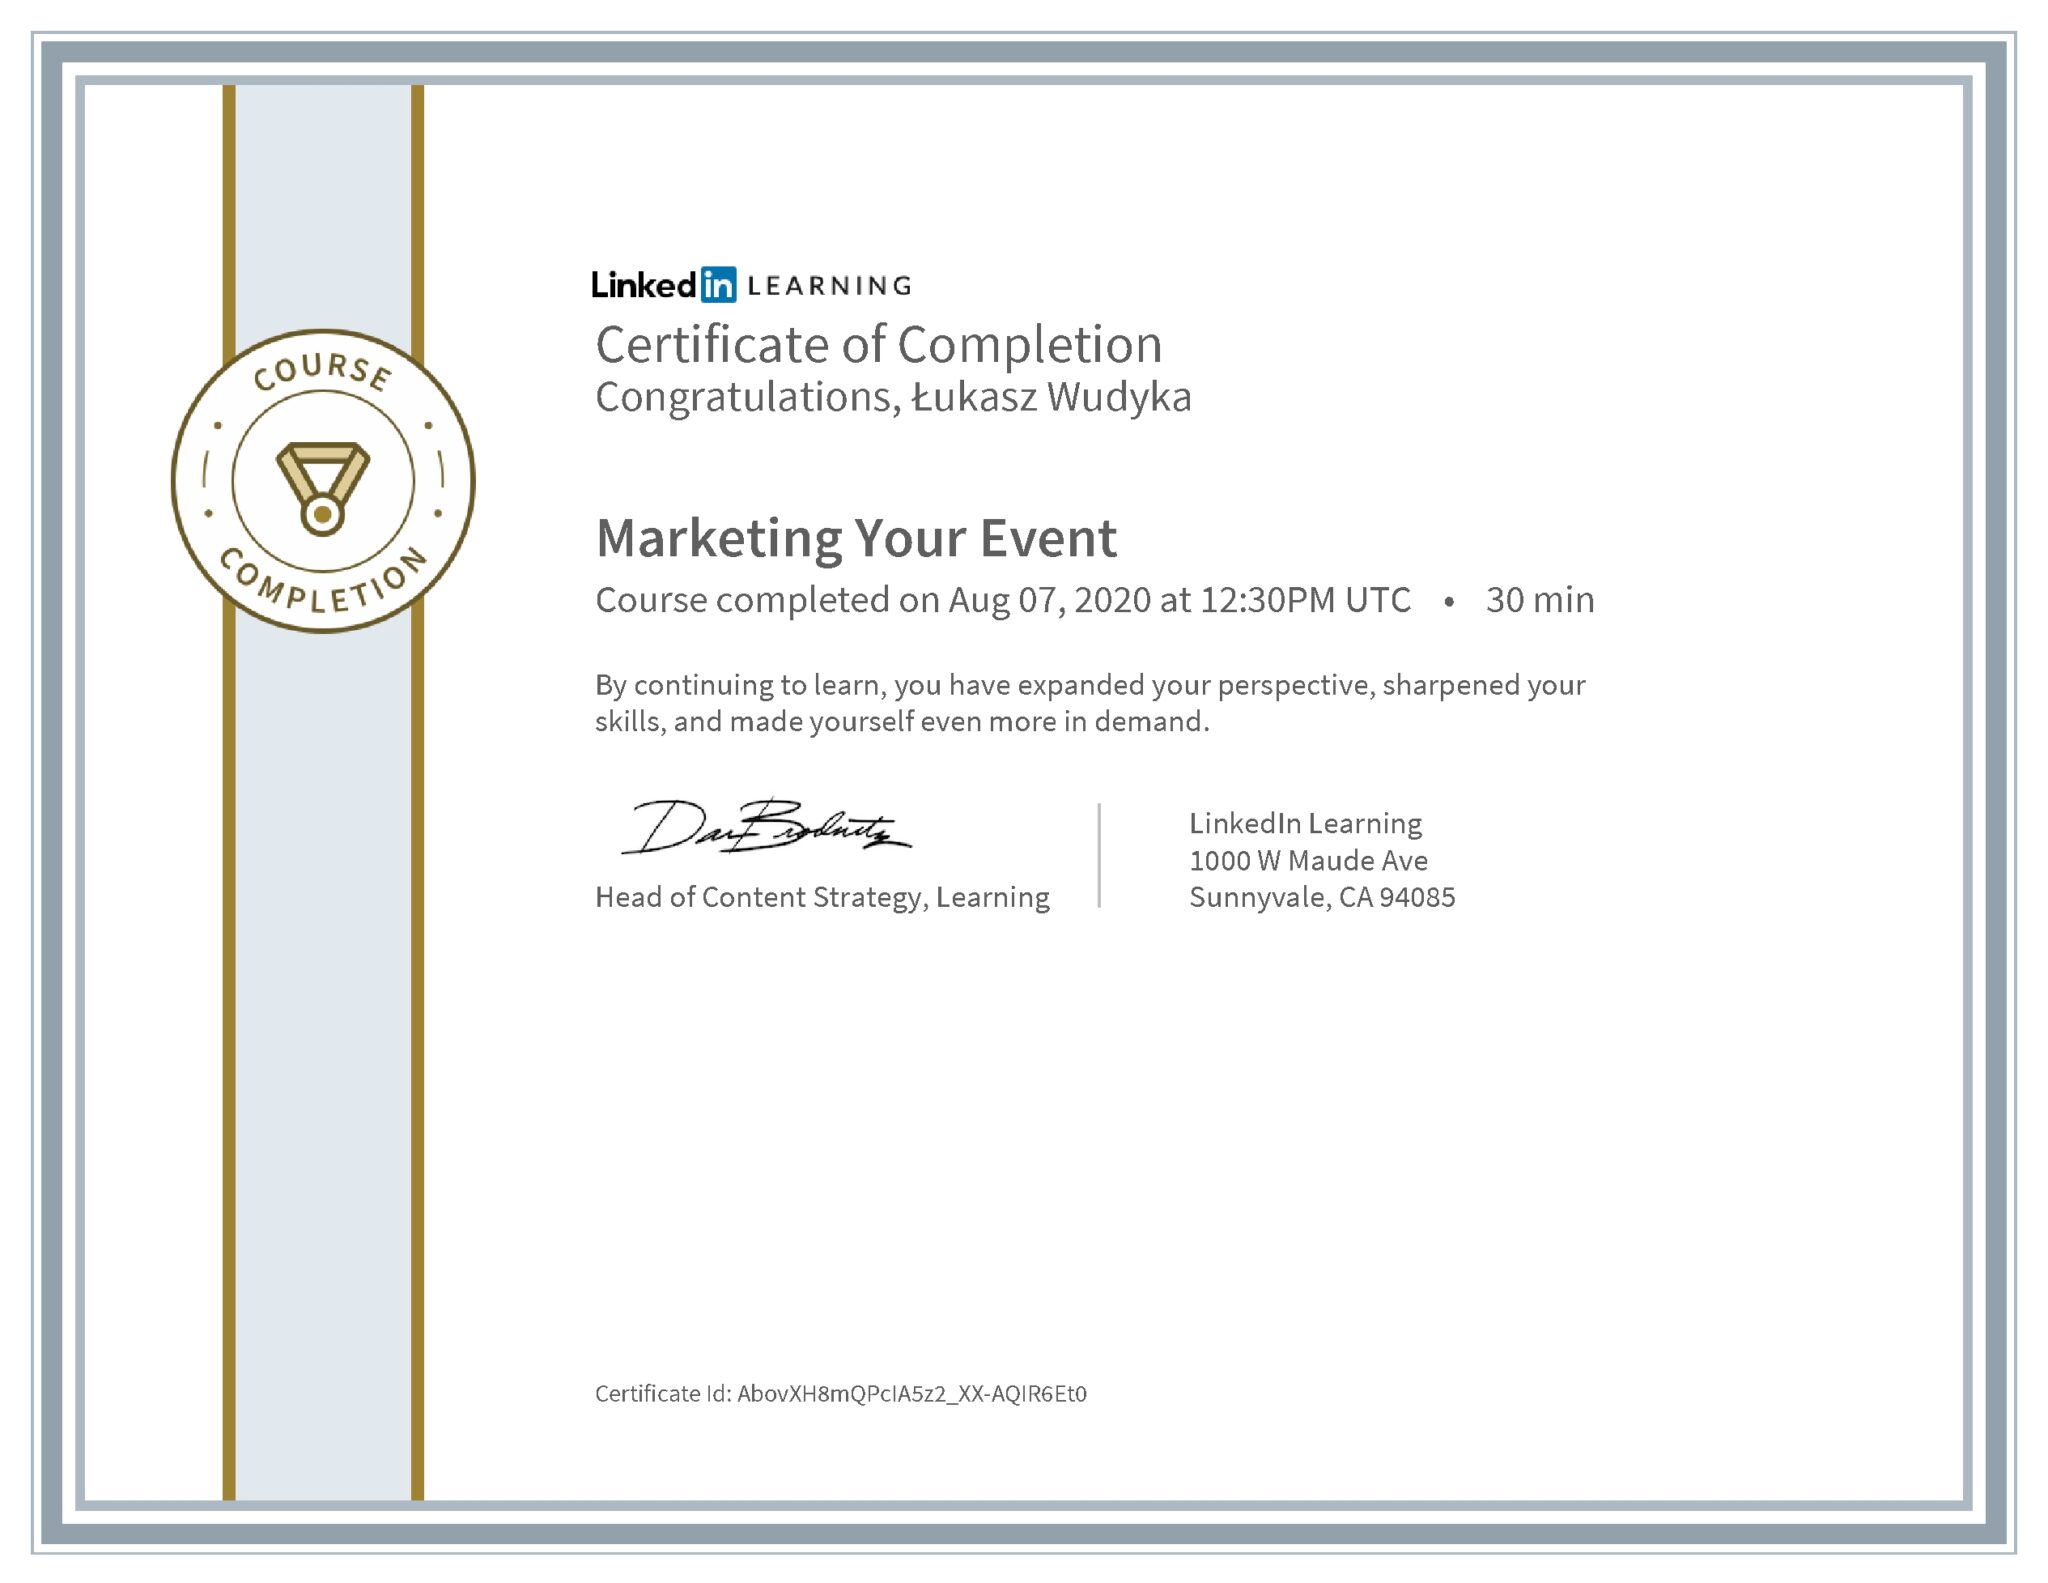 Łukasz Wudyka certyfikat LinkedIn Marketing Your Event